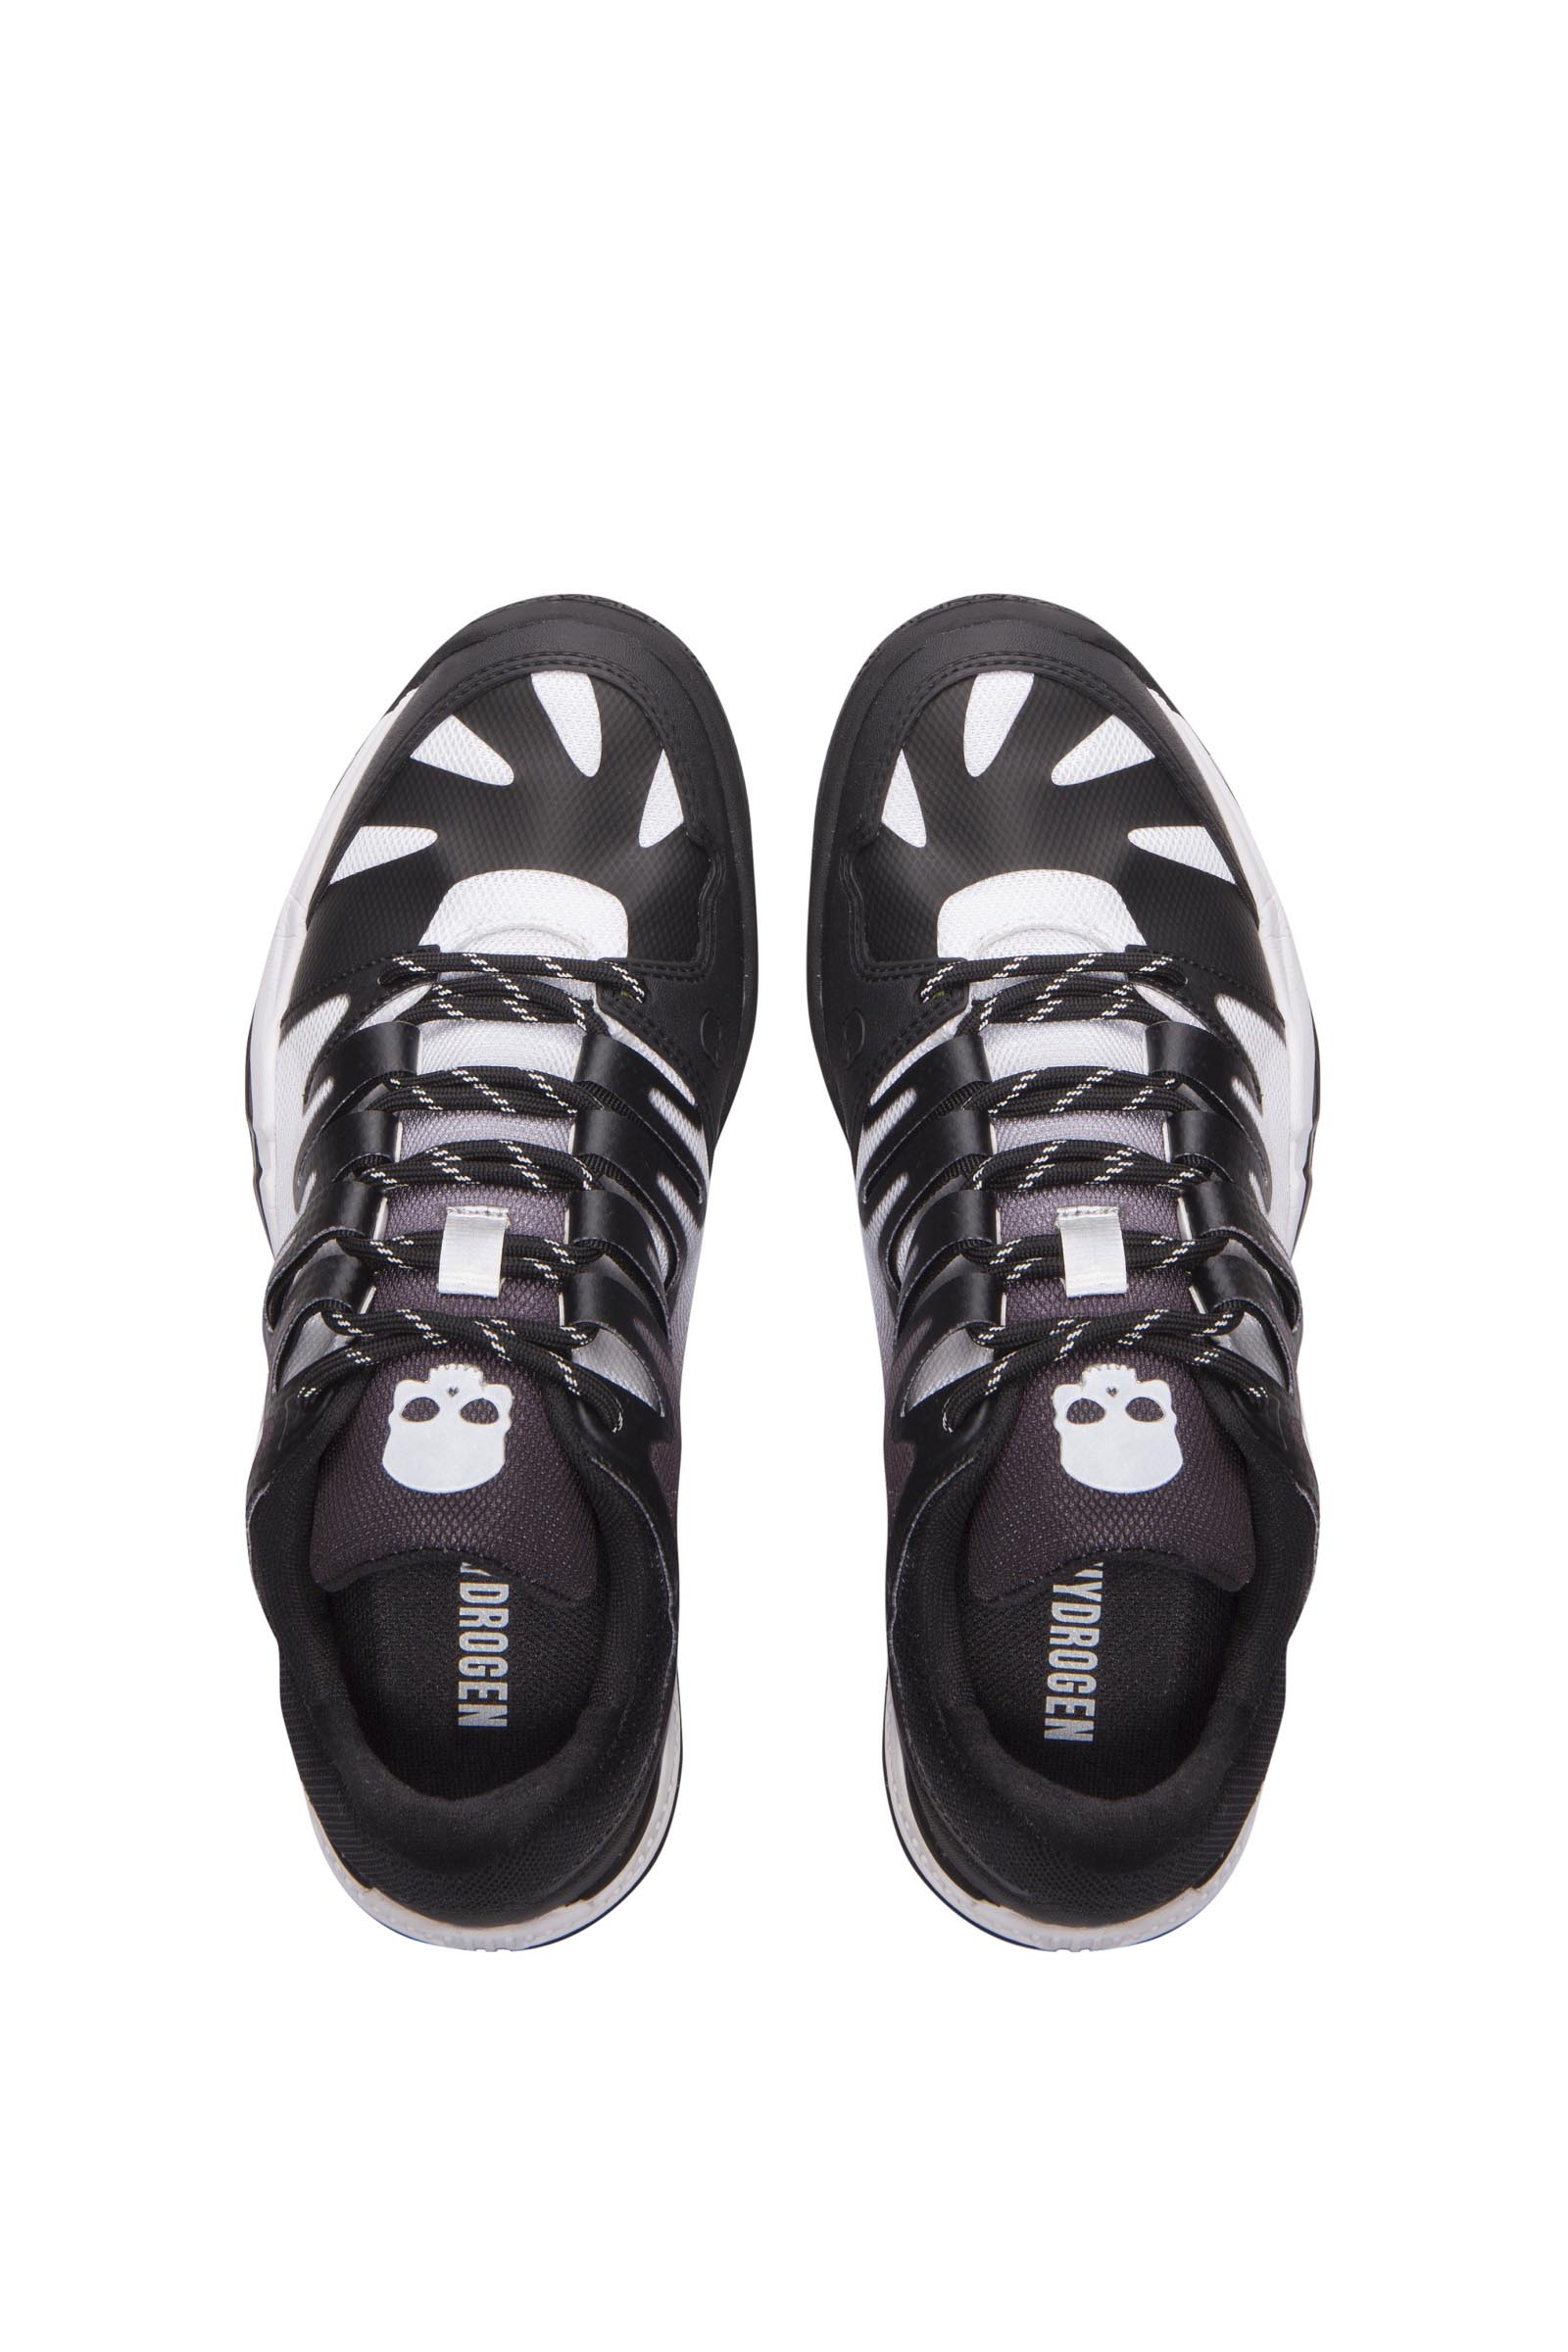 TENNIS SHOES - BLACK,WHITE - Hydrogen - Luxury Sportwear